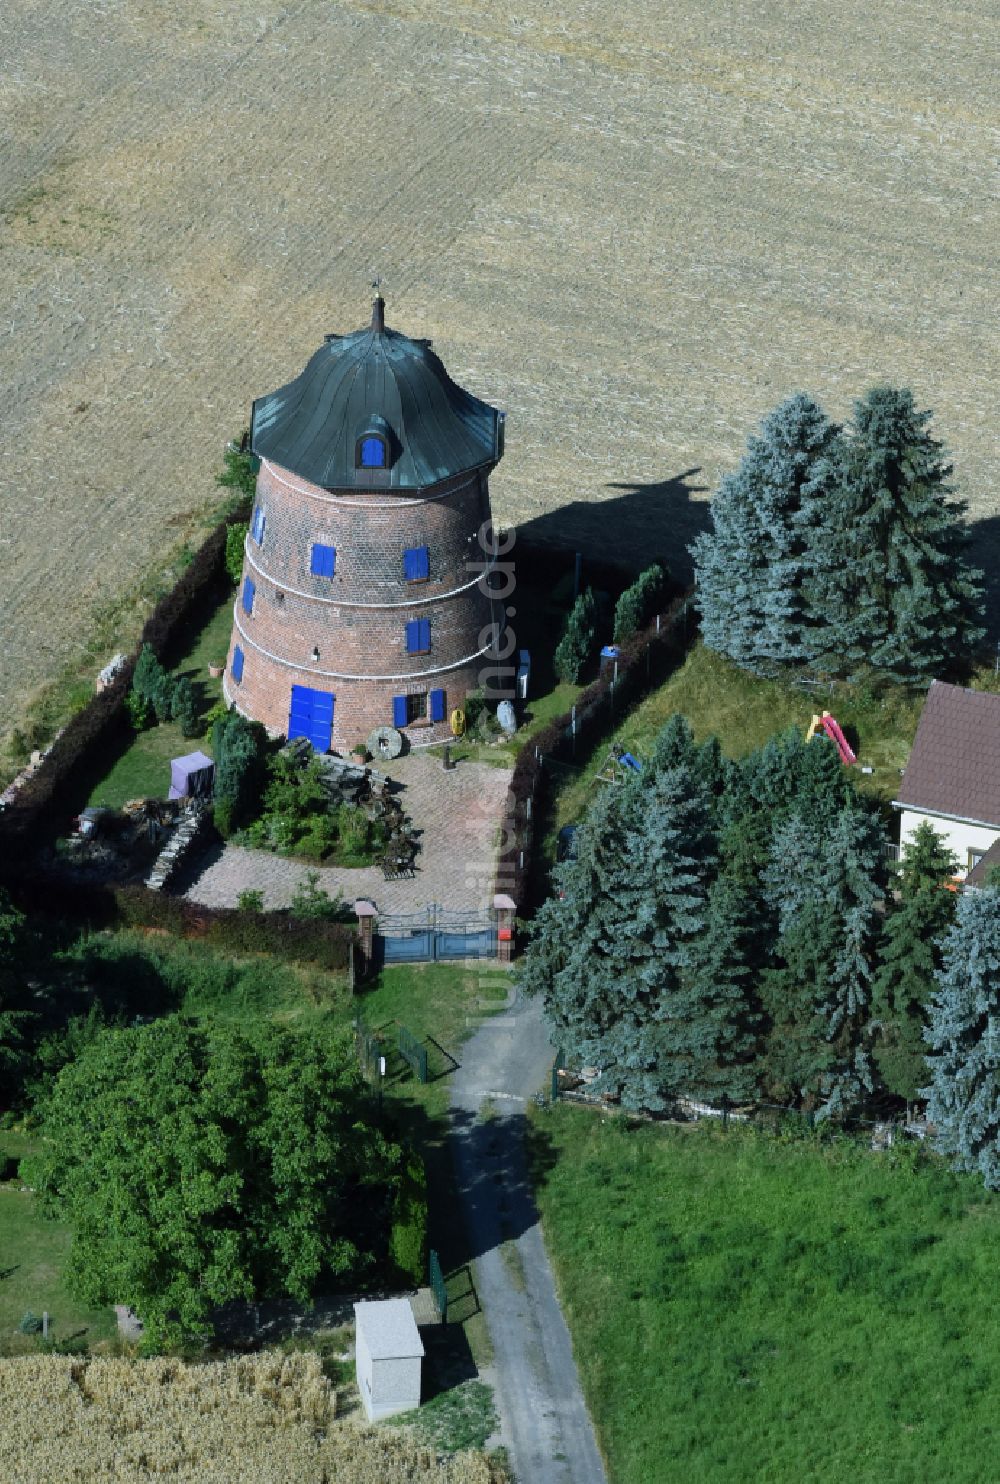 Naundorf von oben - Historische Turmwindmühle am Gehöft eines Bauernhofes am Rand von bestellten Feldern in Naundorf im Bundesland Sachsen